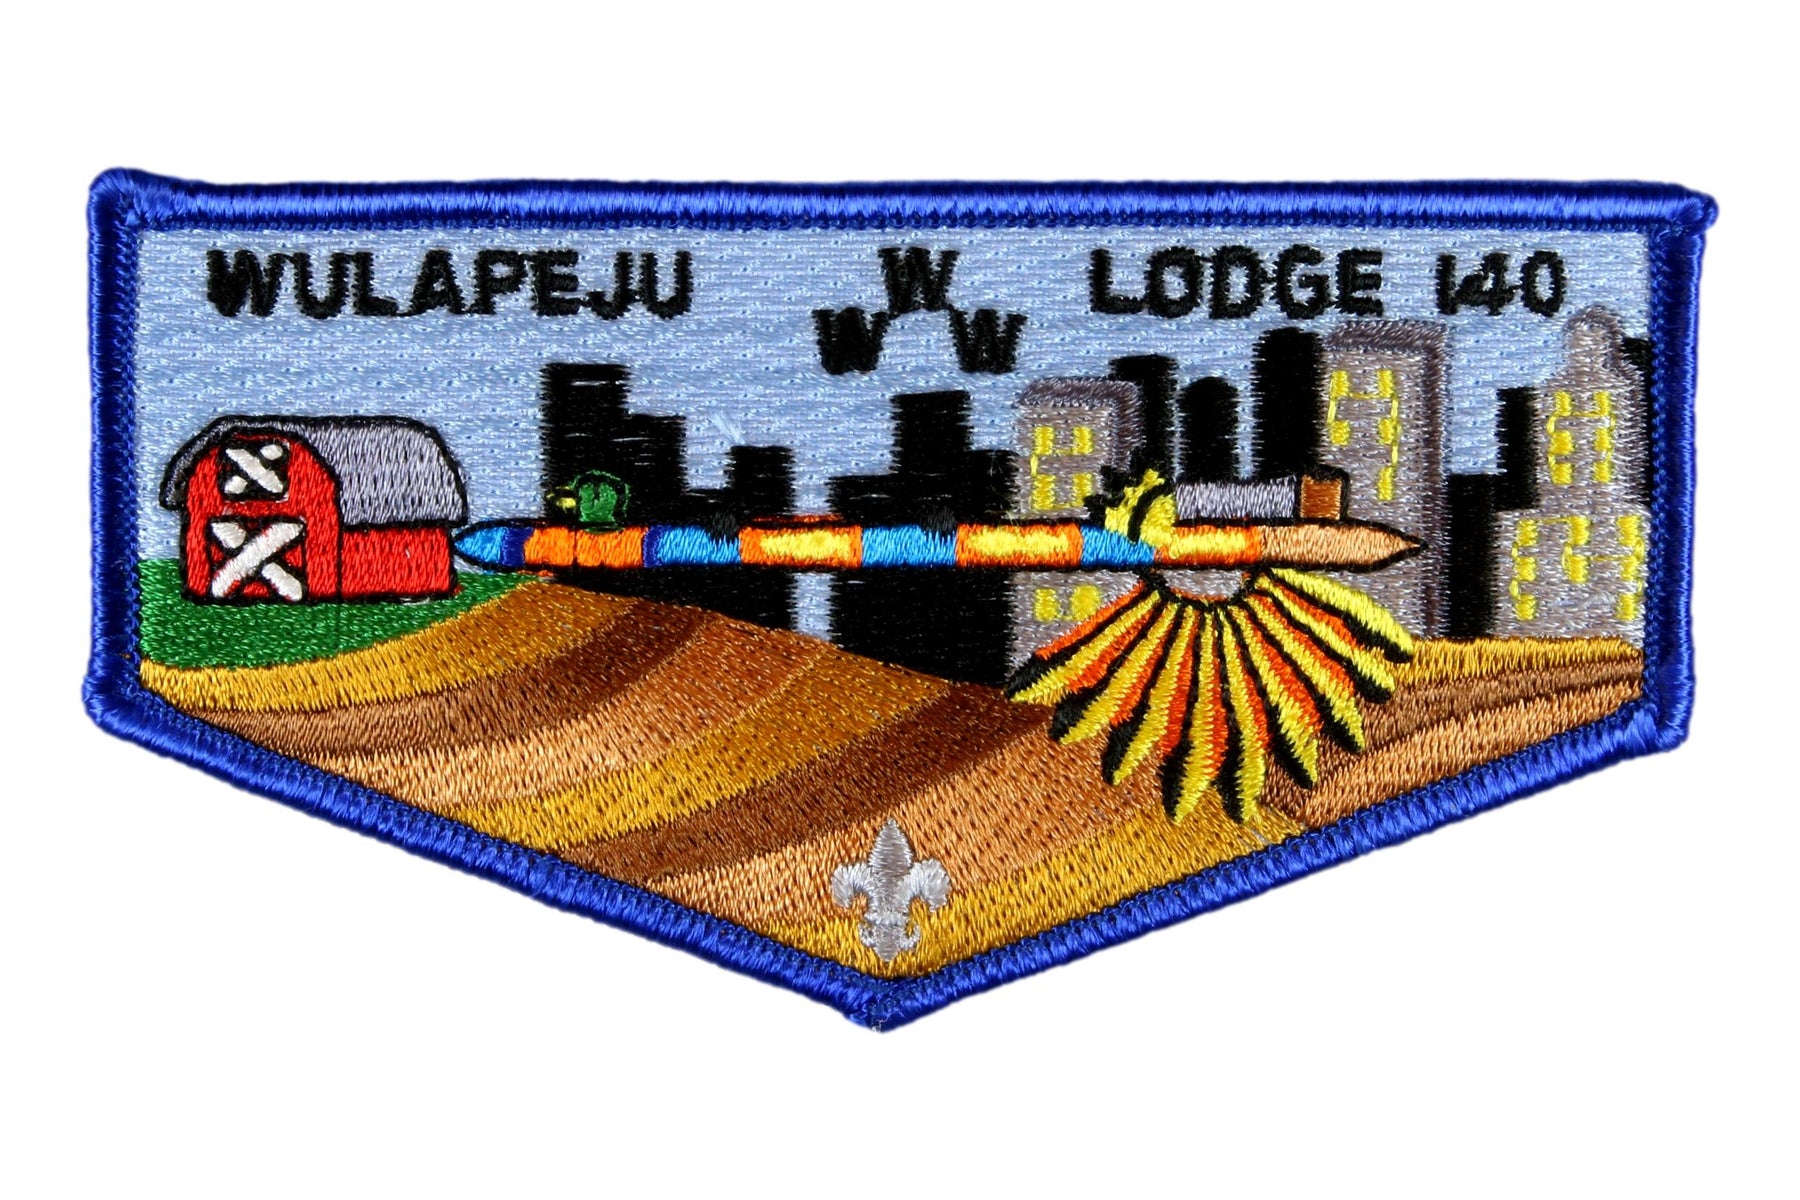 Lodge 140 Wulapeju Flap S-37